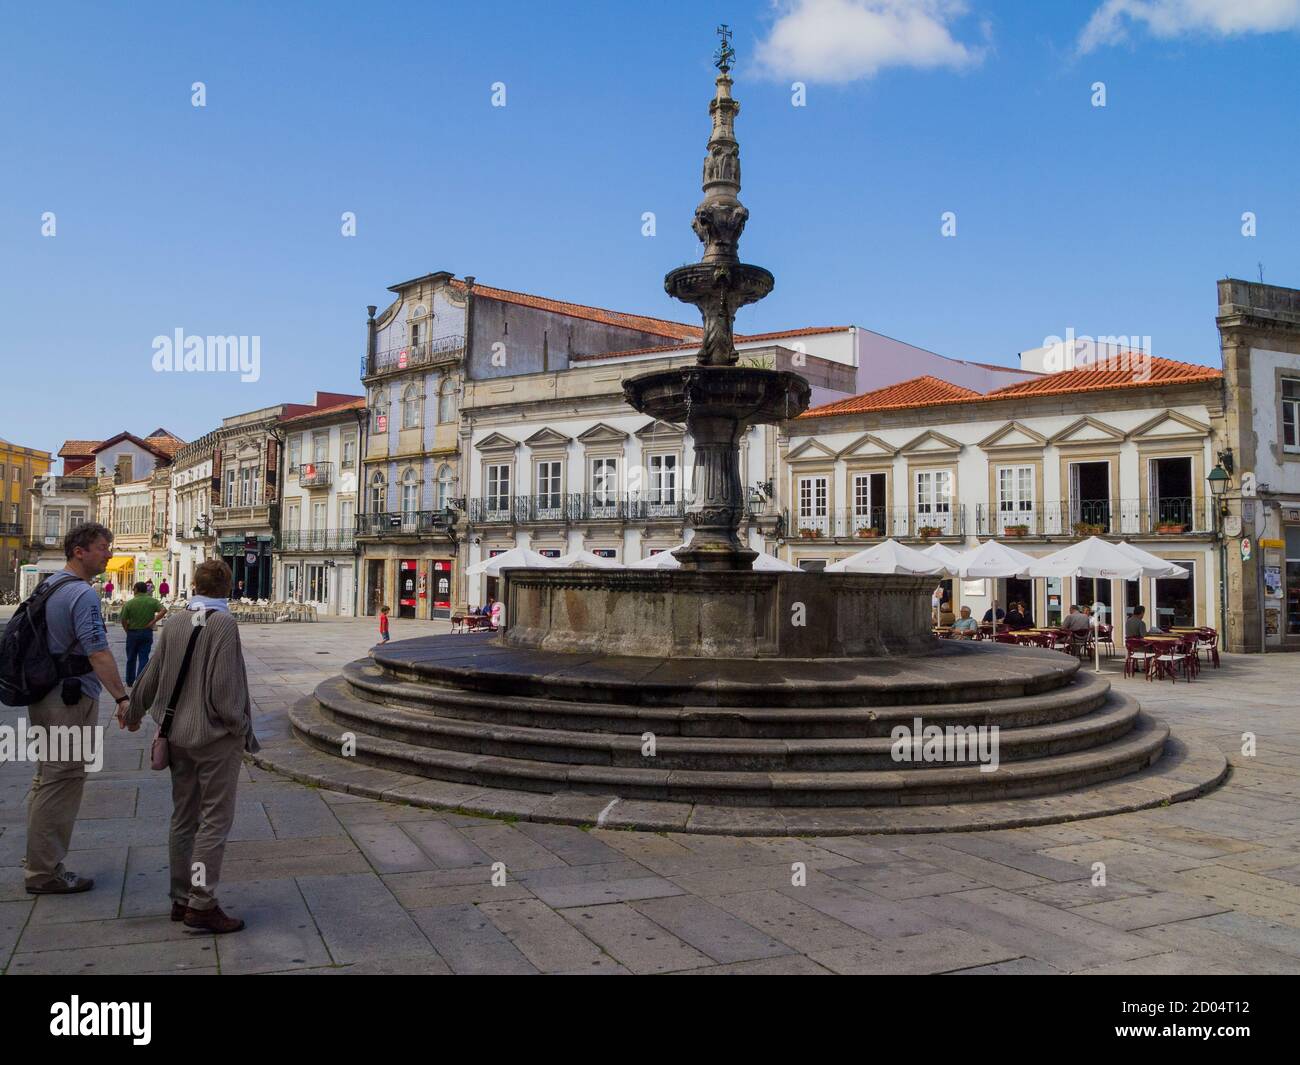 Touristes se promenant près de la fontaine Renaissance datant de 1535, sur la place de la République (Praca da Republica) - Viana do Castelo - Portugal - Europe Banque D'Images